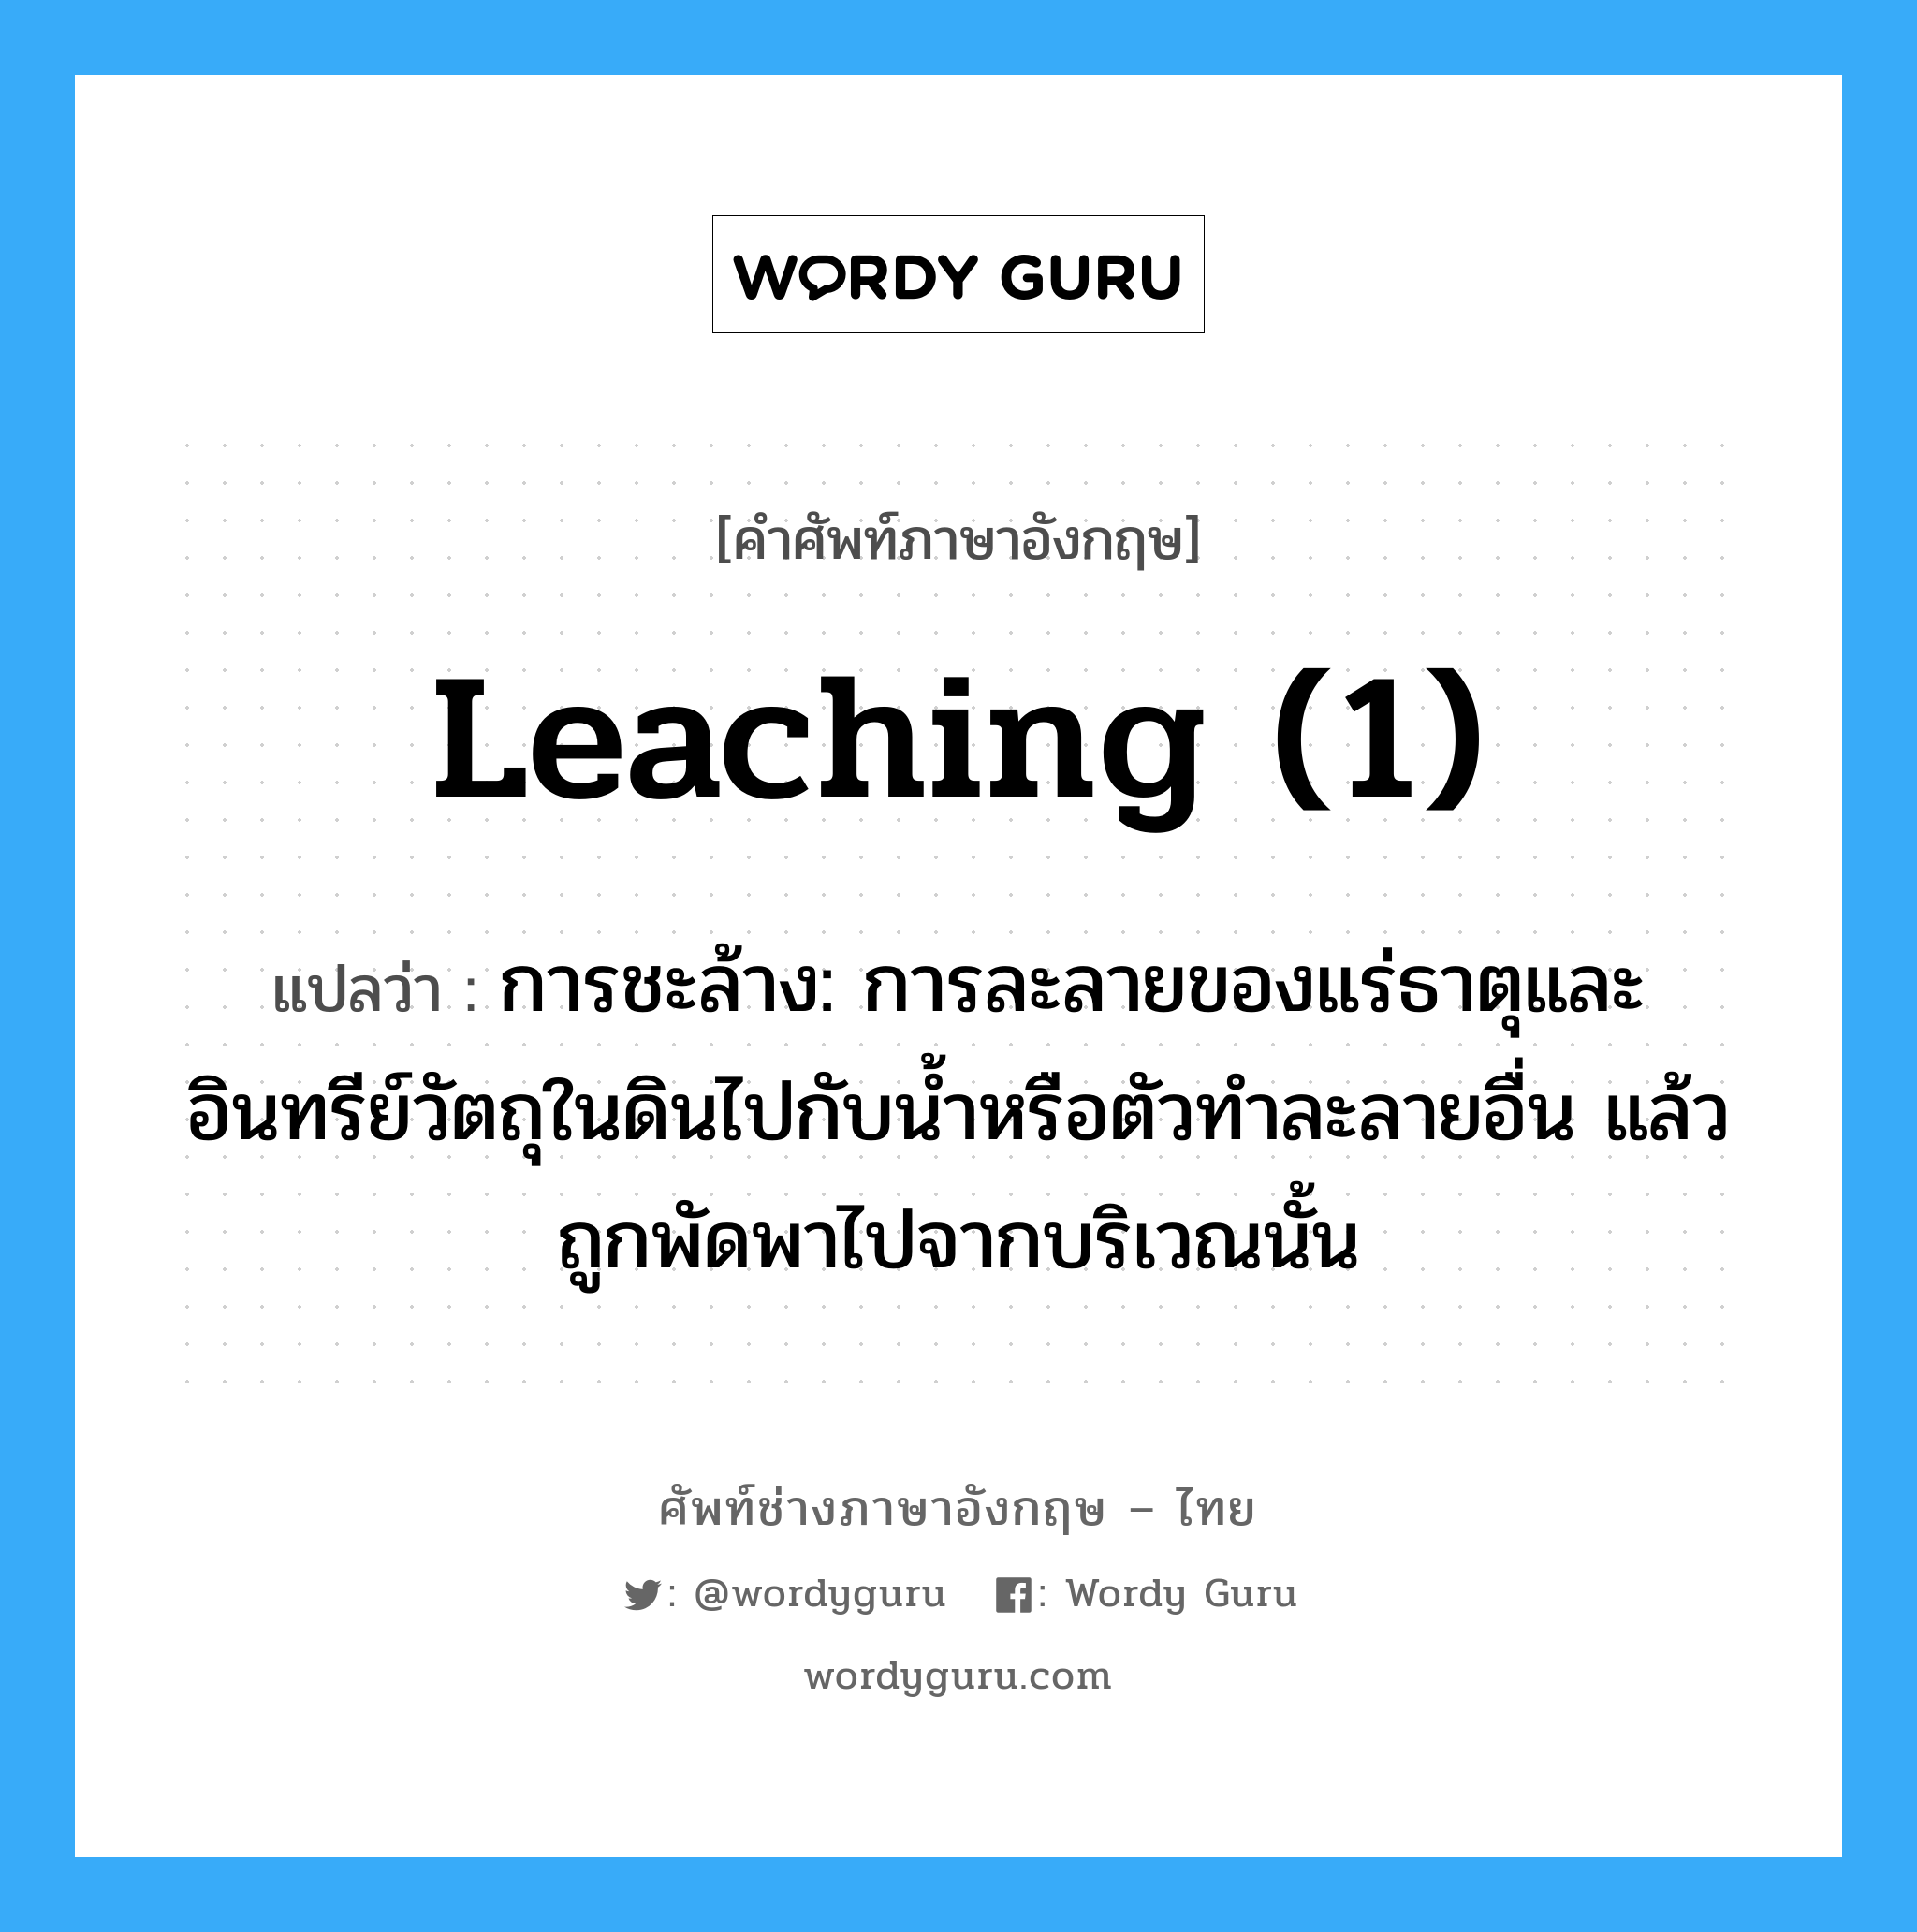 leaching (1) แปลว่า?, คำศัพท์ช่างภาษาอังกฤษ - ไทย leaching (1) คำศัพท์ภาษาอังกฤษ leaching (1) แปลว่า การชะล้าง: การละลายของแร่ธาตุและอินทรีย์วัตถุในดินไปกับน้ำหรือตัวทำละลายอื่น แล้วถูกพัดพาไปจากบริเวณนั้น